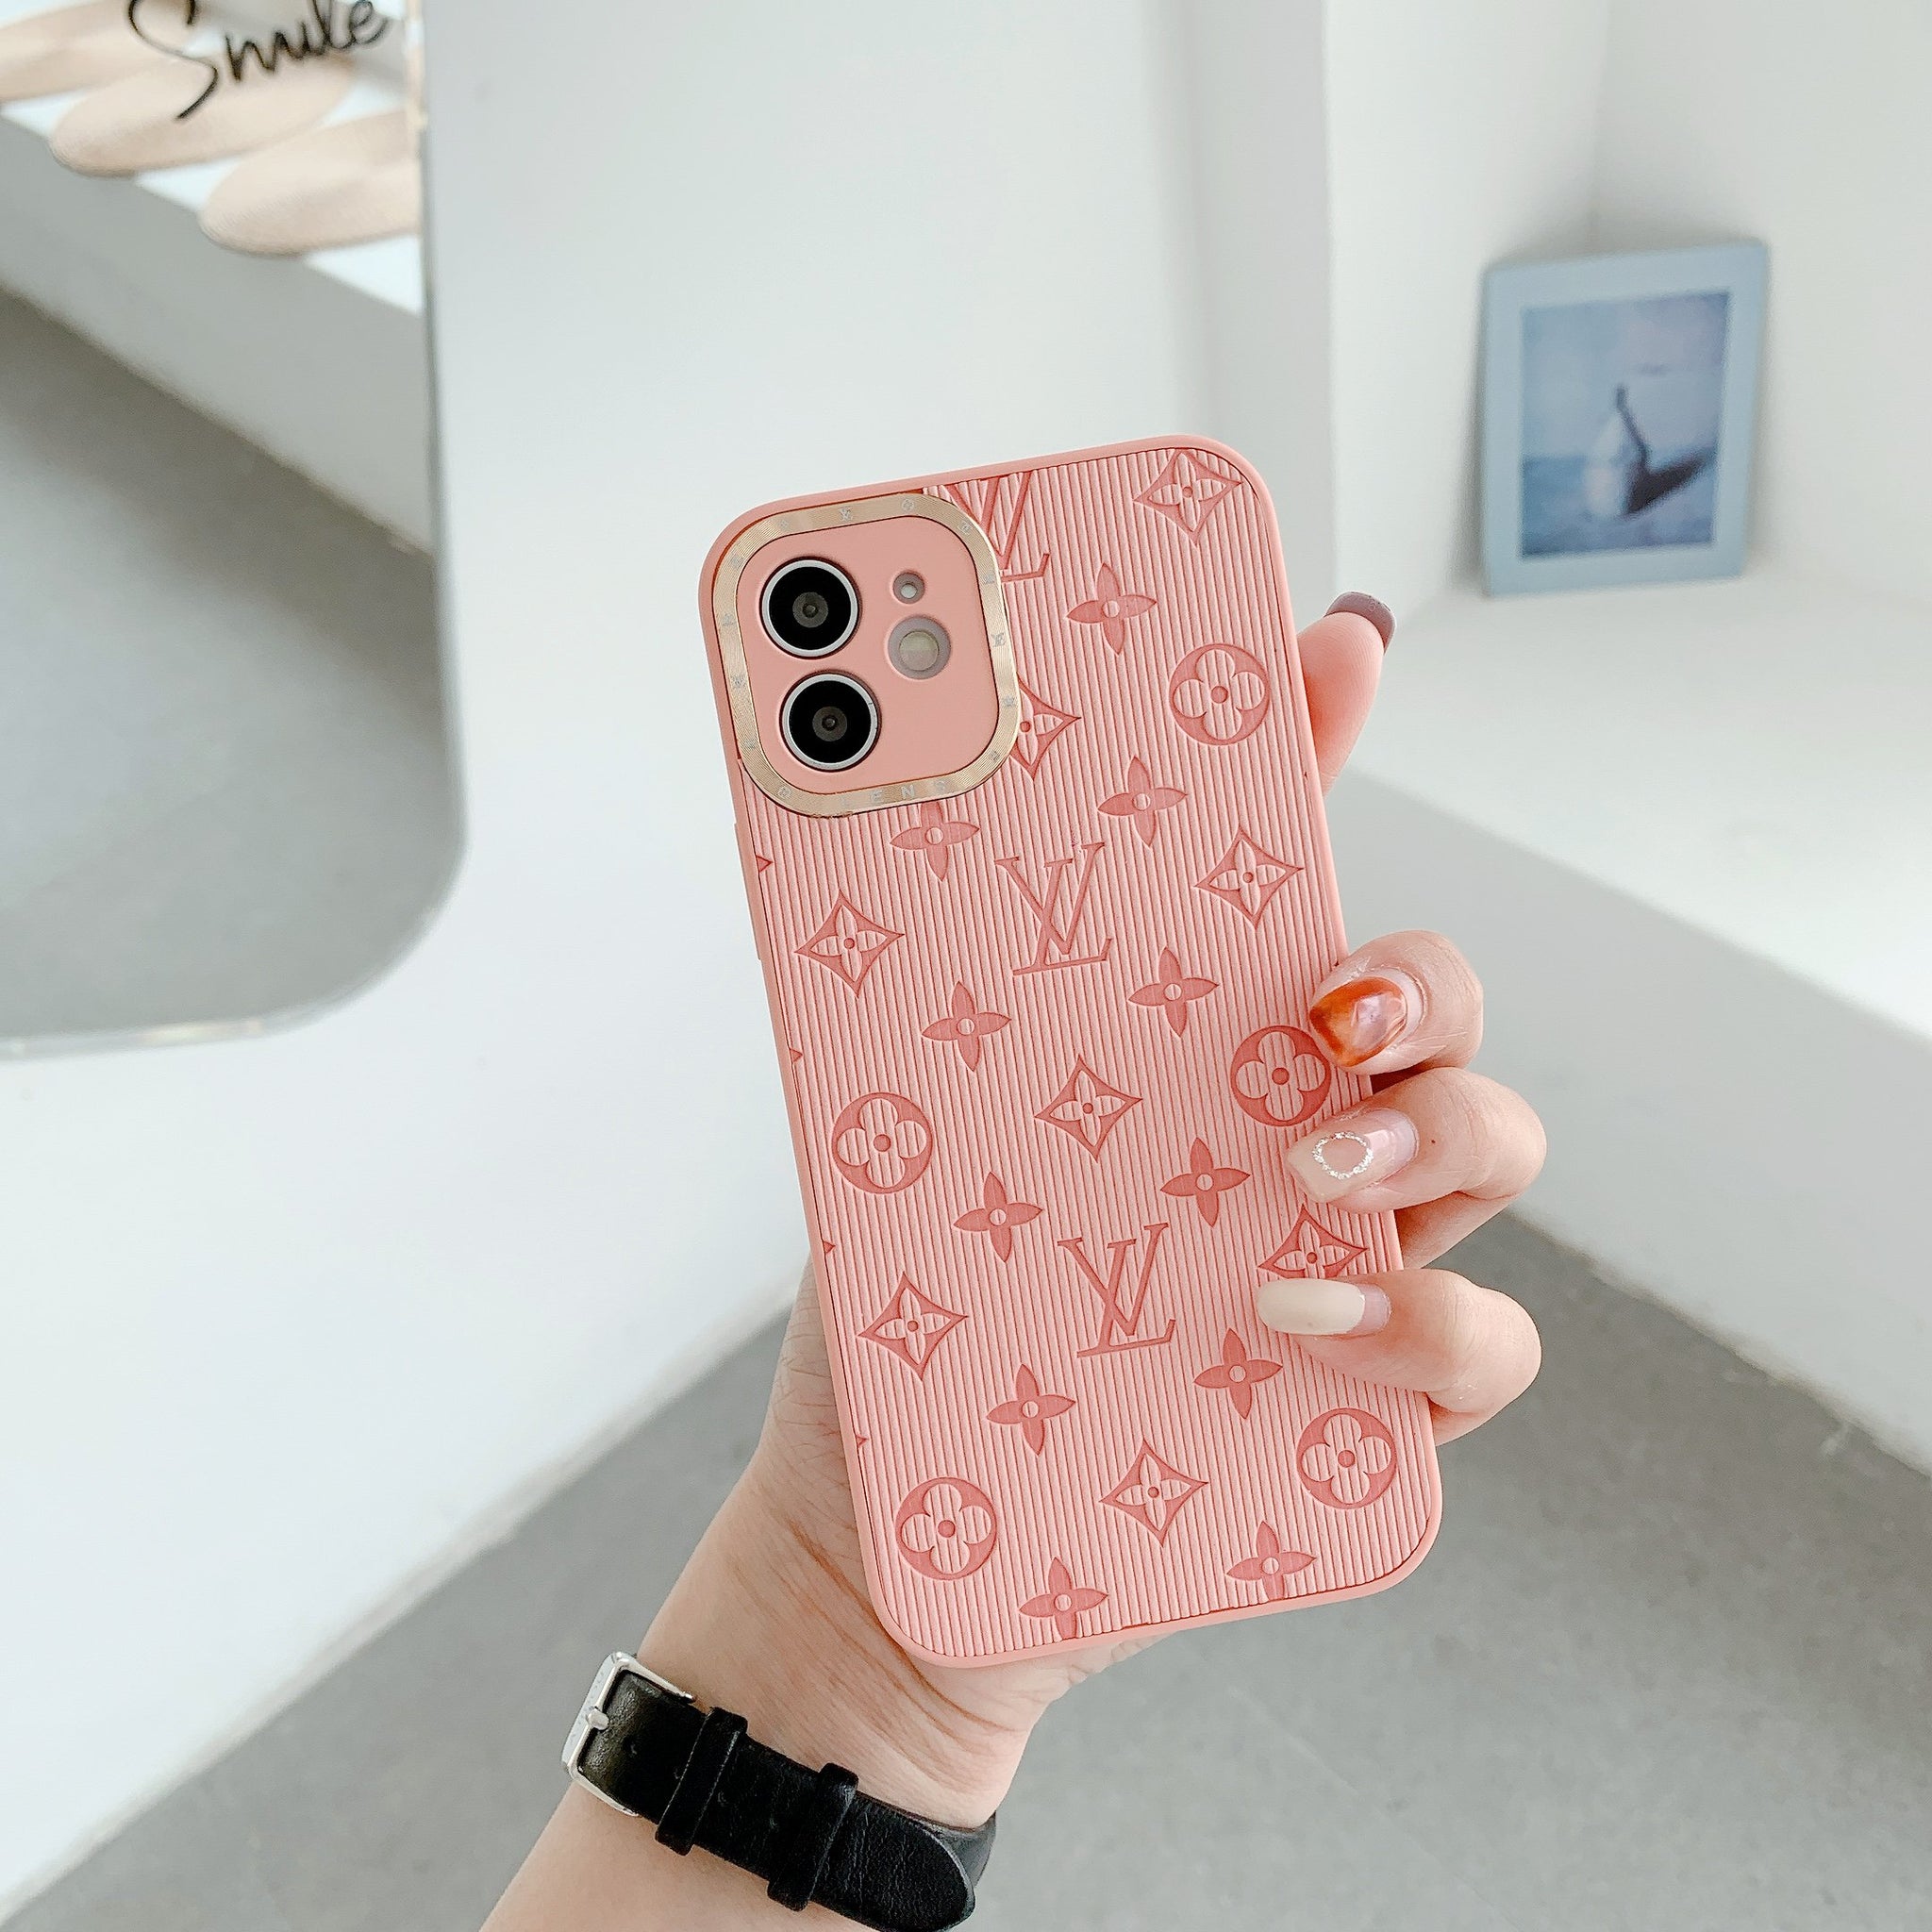 Louis Vuitton iPhone Case 11 Pro Max 